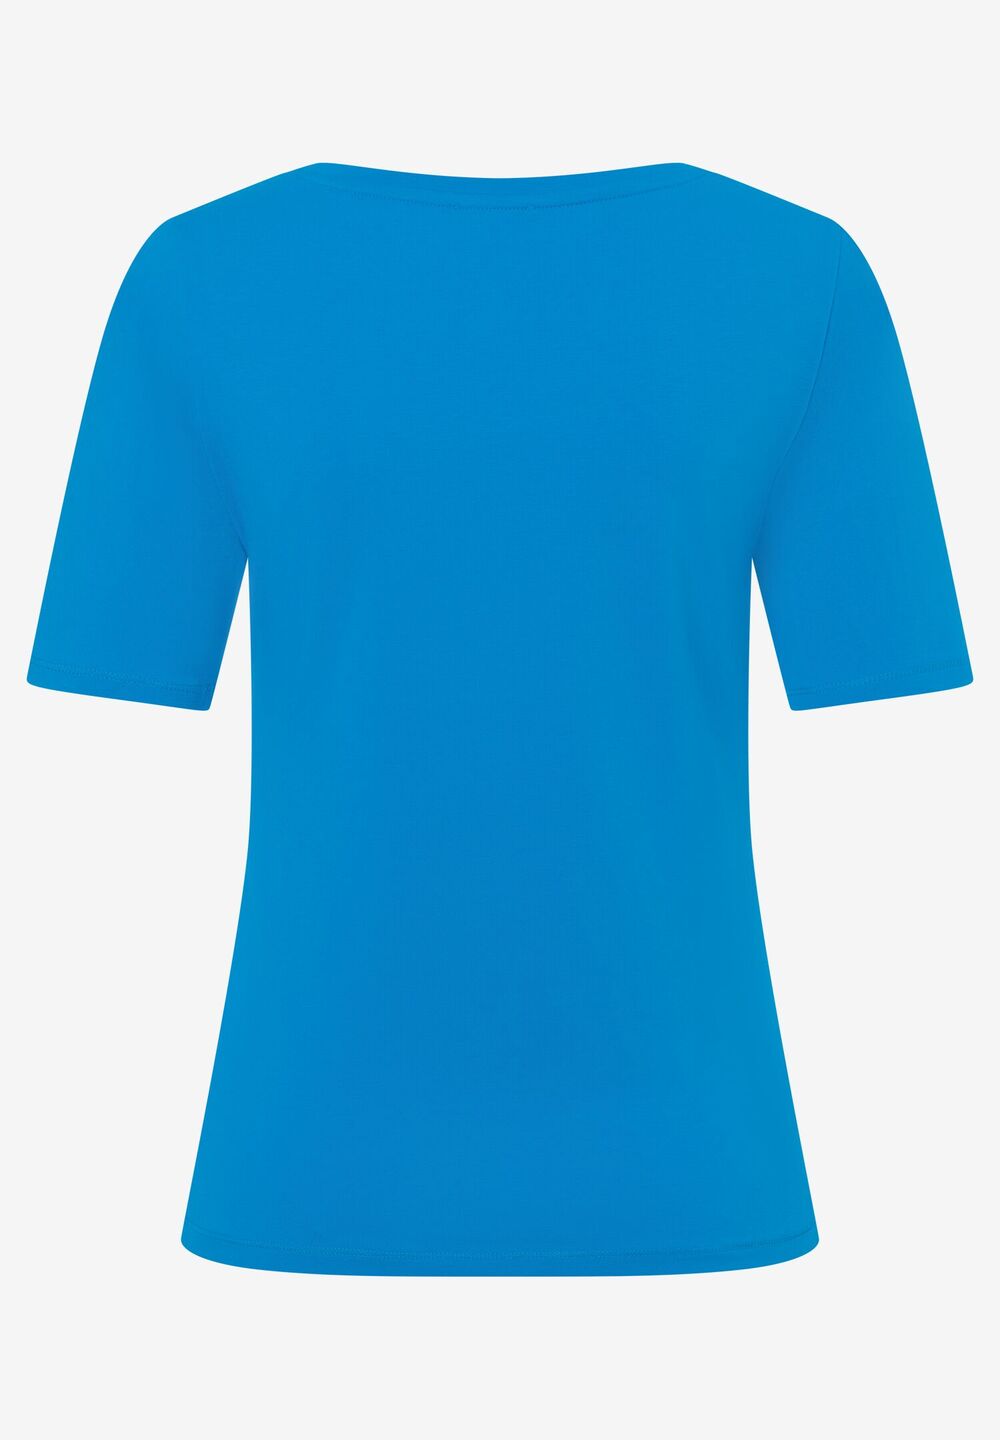 T-Shirt, U-Boot Ausschnitt, cool blue, Frühjahrs-Kollektion, blauRückansicht